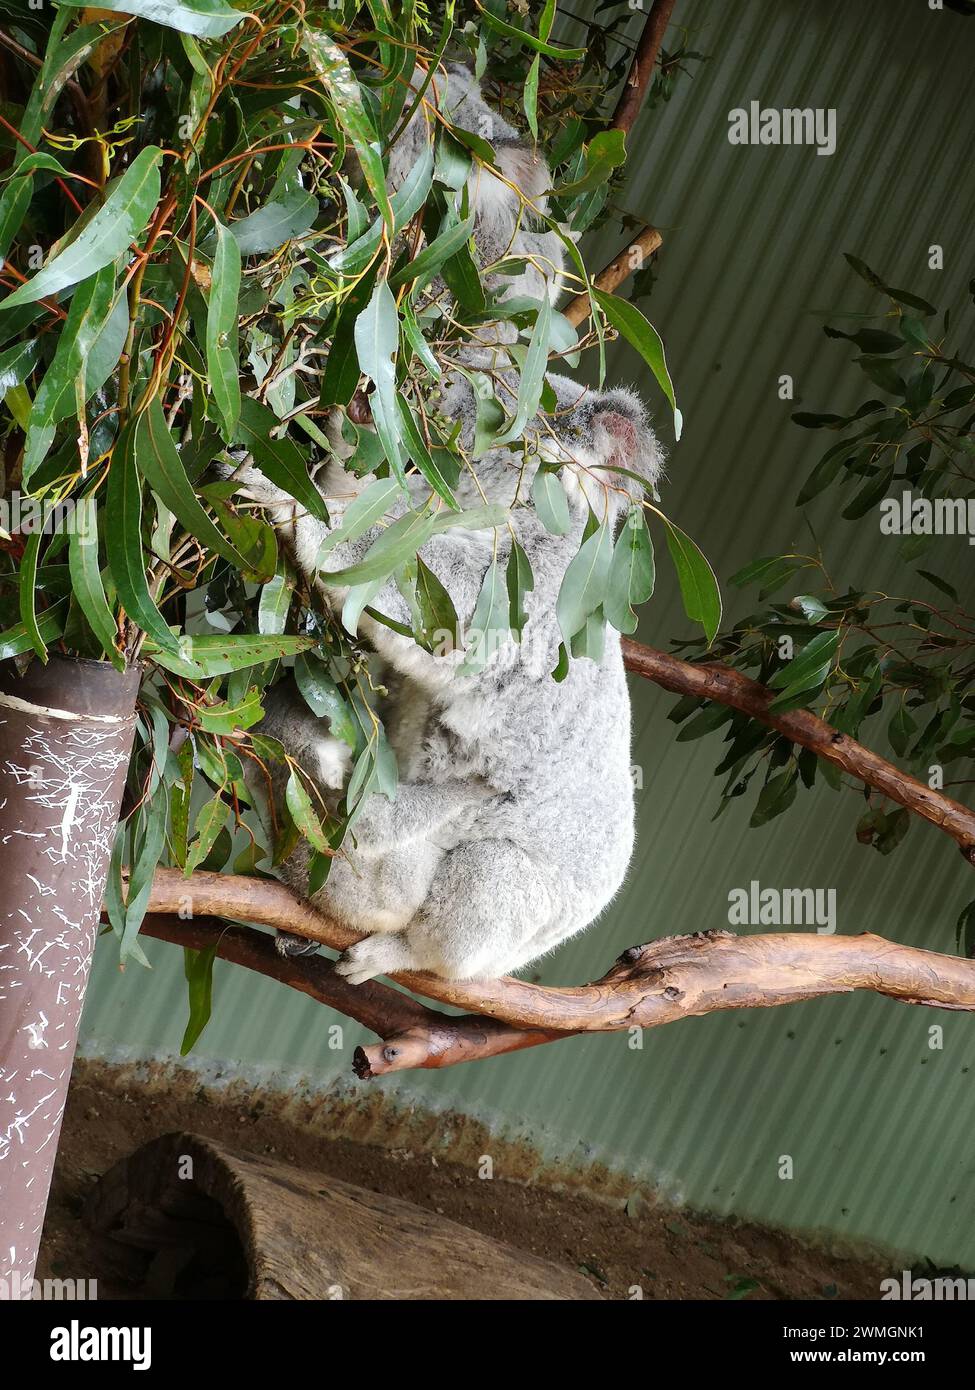 Un koala grignotant sur des feuilles vertes fraîches dans un arbre à Sydney, Australie, Featherdale Sydney Wildlife Park Banque D'Images